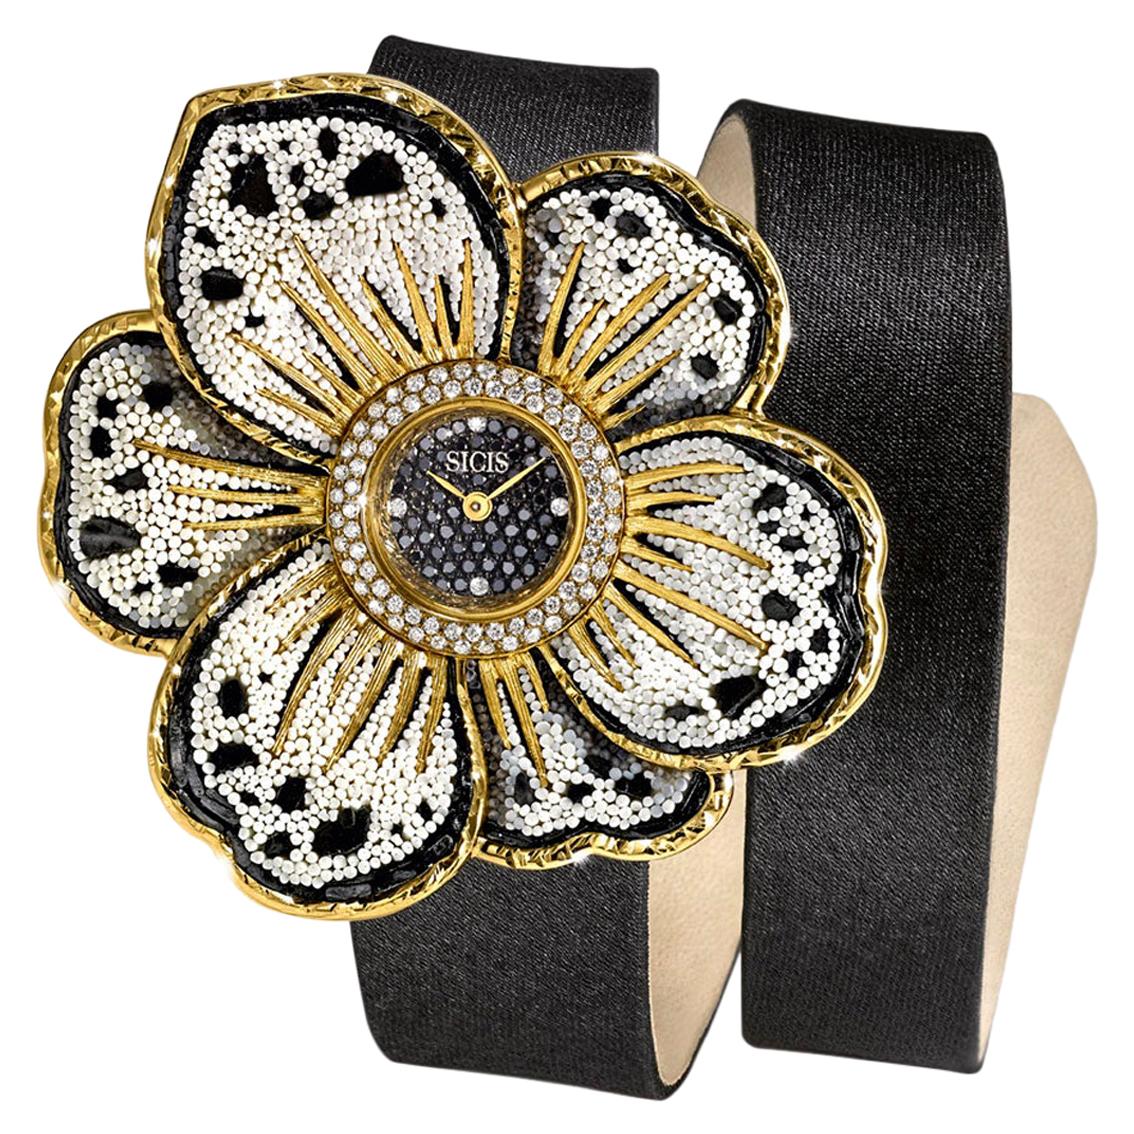 Uhr, Gold, weiße und schwarze Diamanten, Satinarmband, handdekoriert mit Mikromosaik